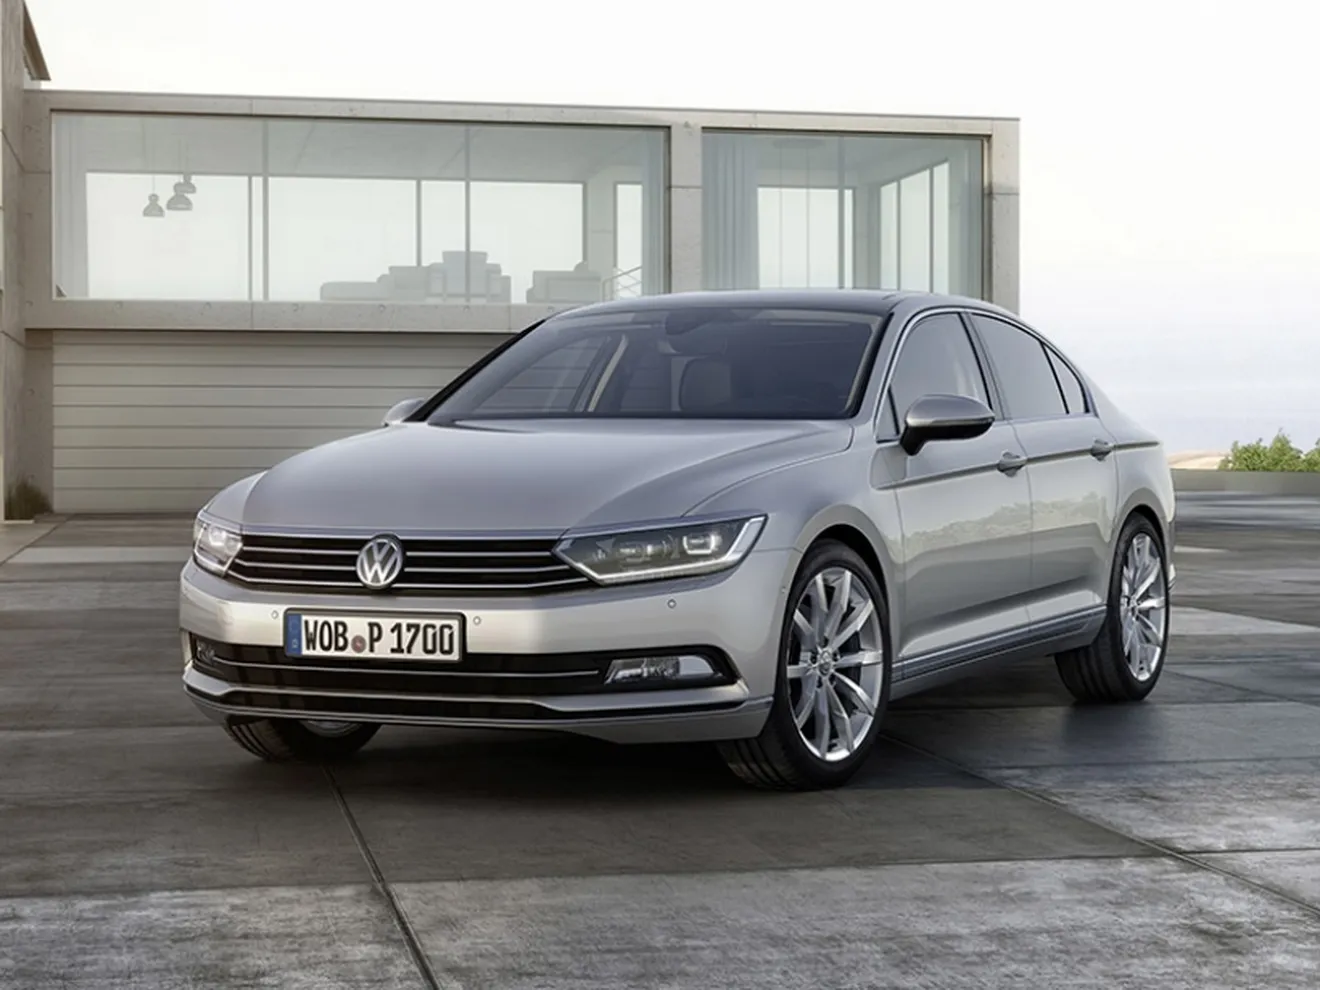 Precios oficiales del Volkswagen Passat 2015